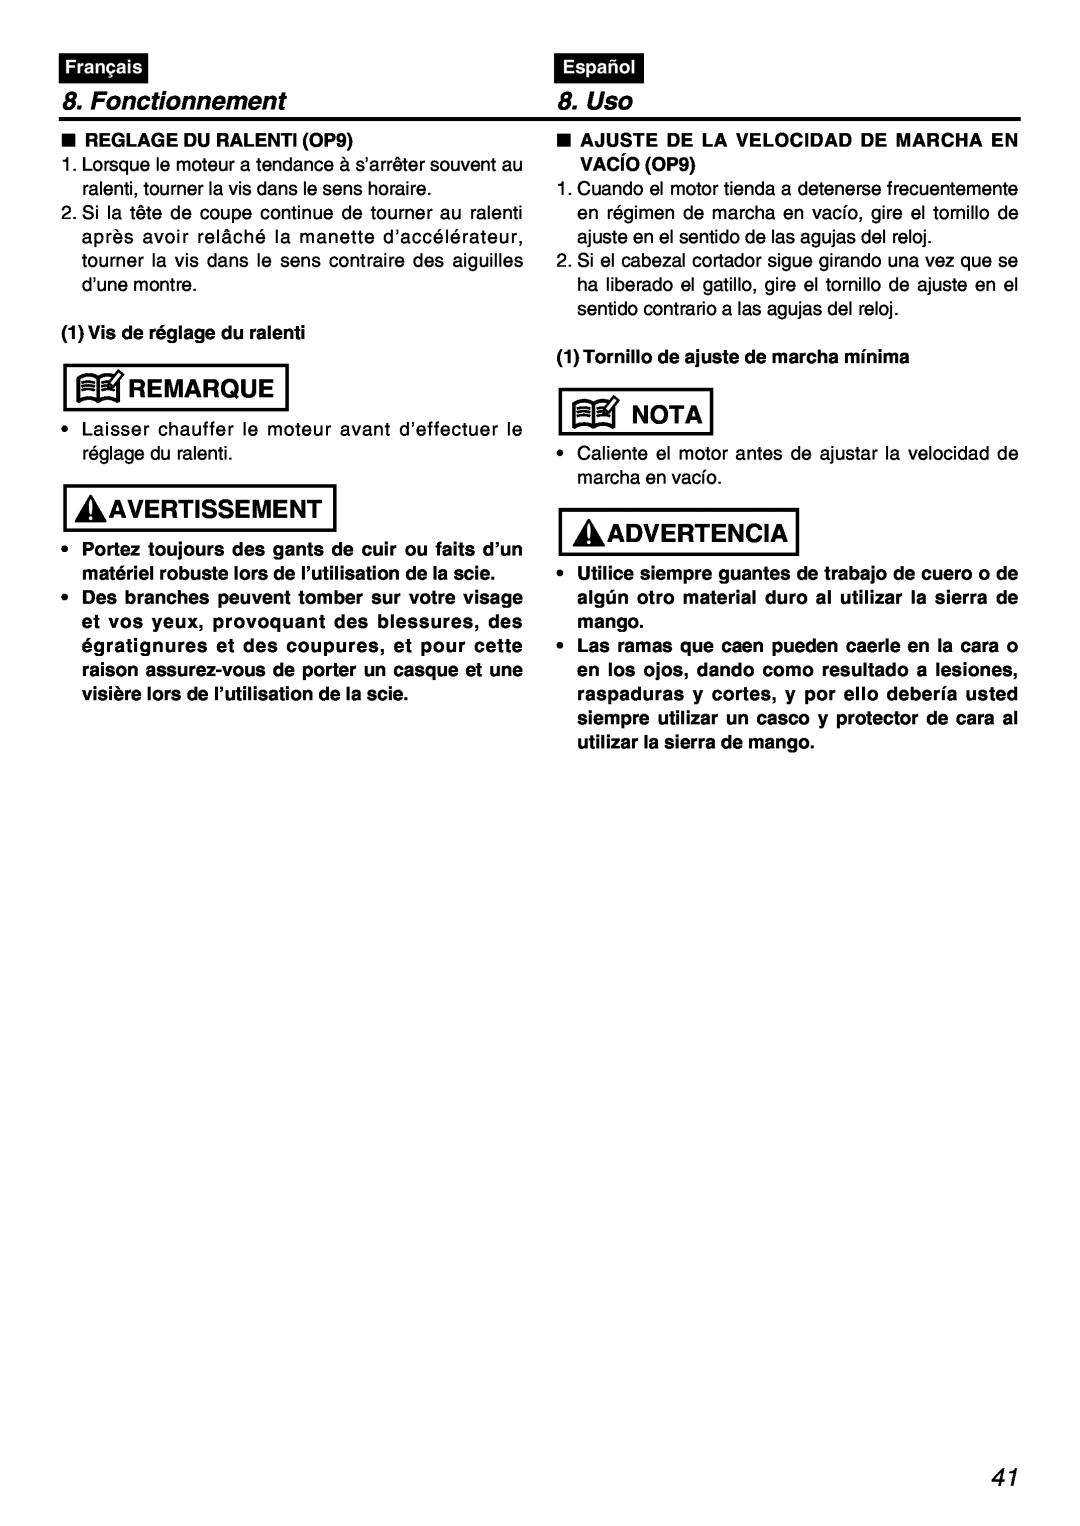 Zenoah PSZ2401 manual Fonctionnement, Uso, Remarque, Avertissement, Nota, Advertencia, Français, Español 